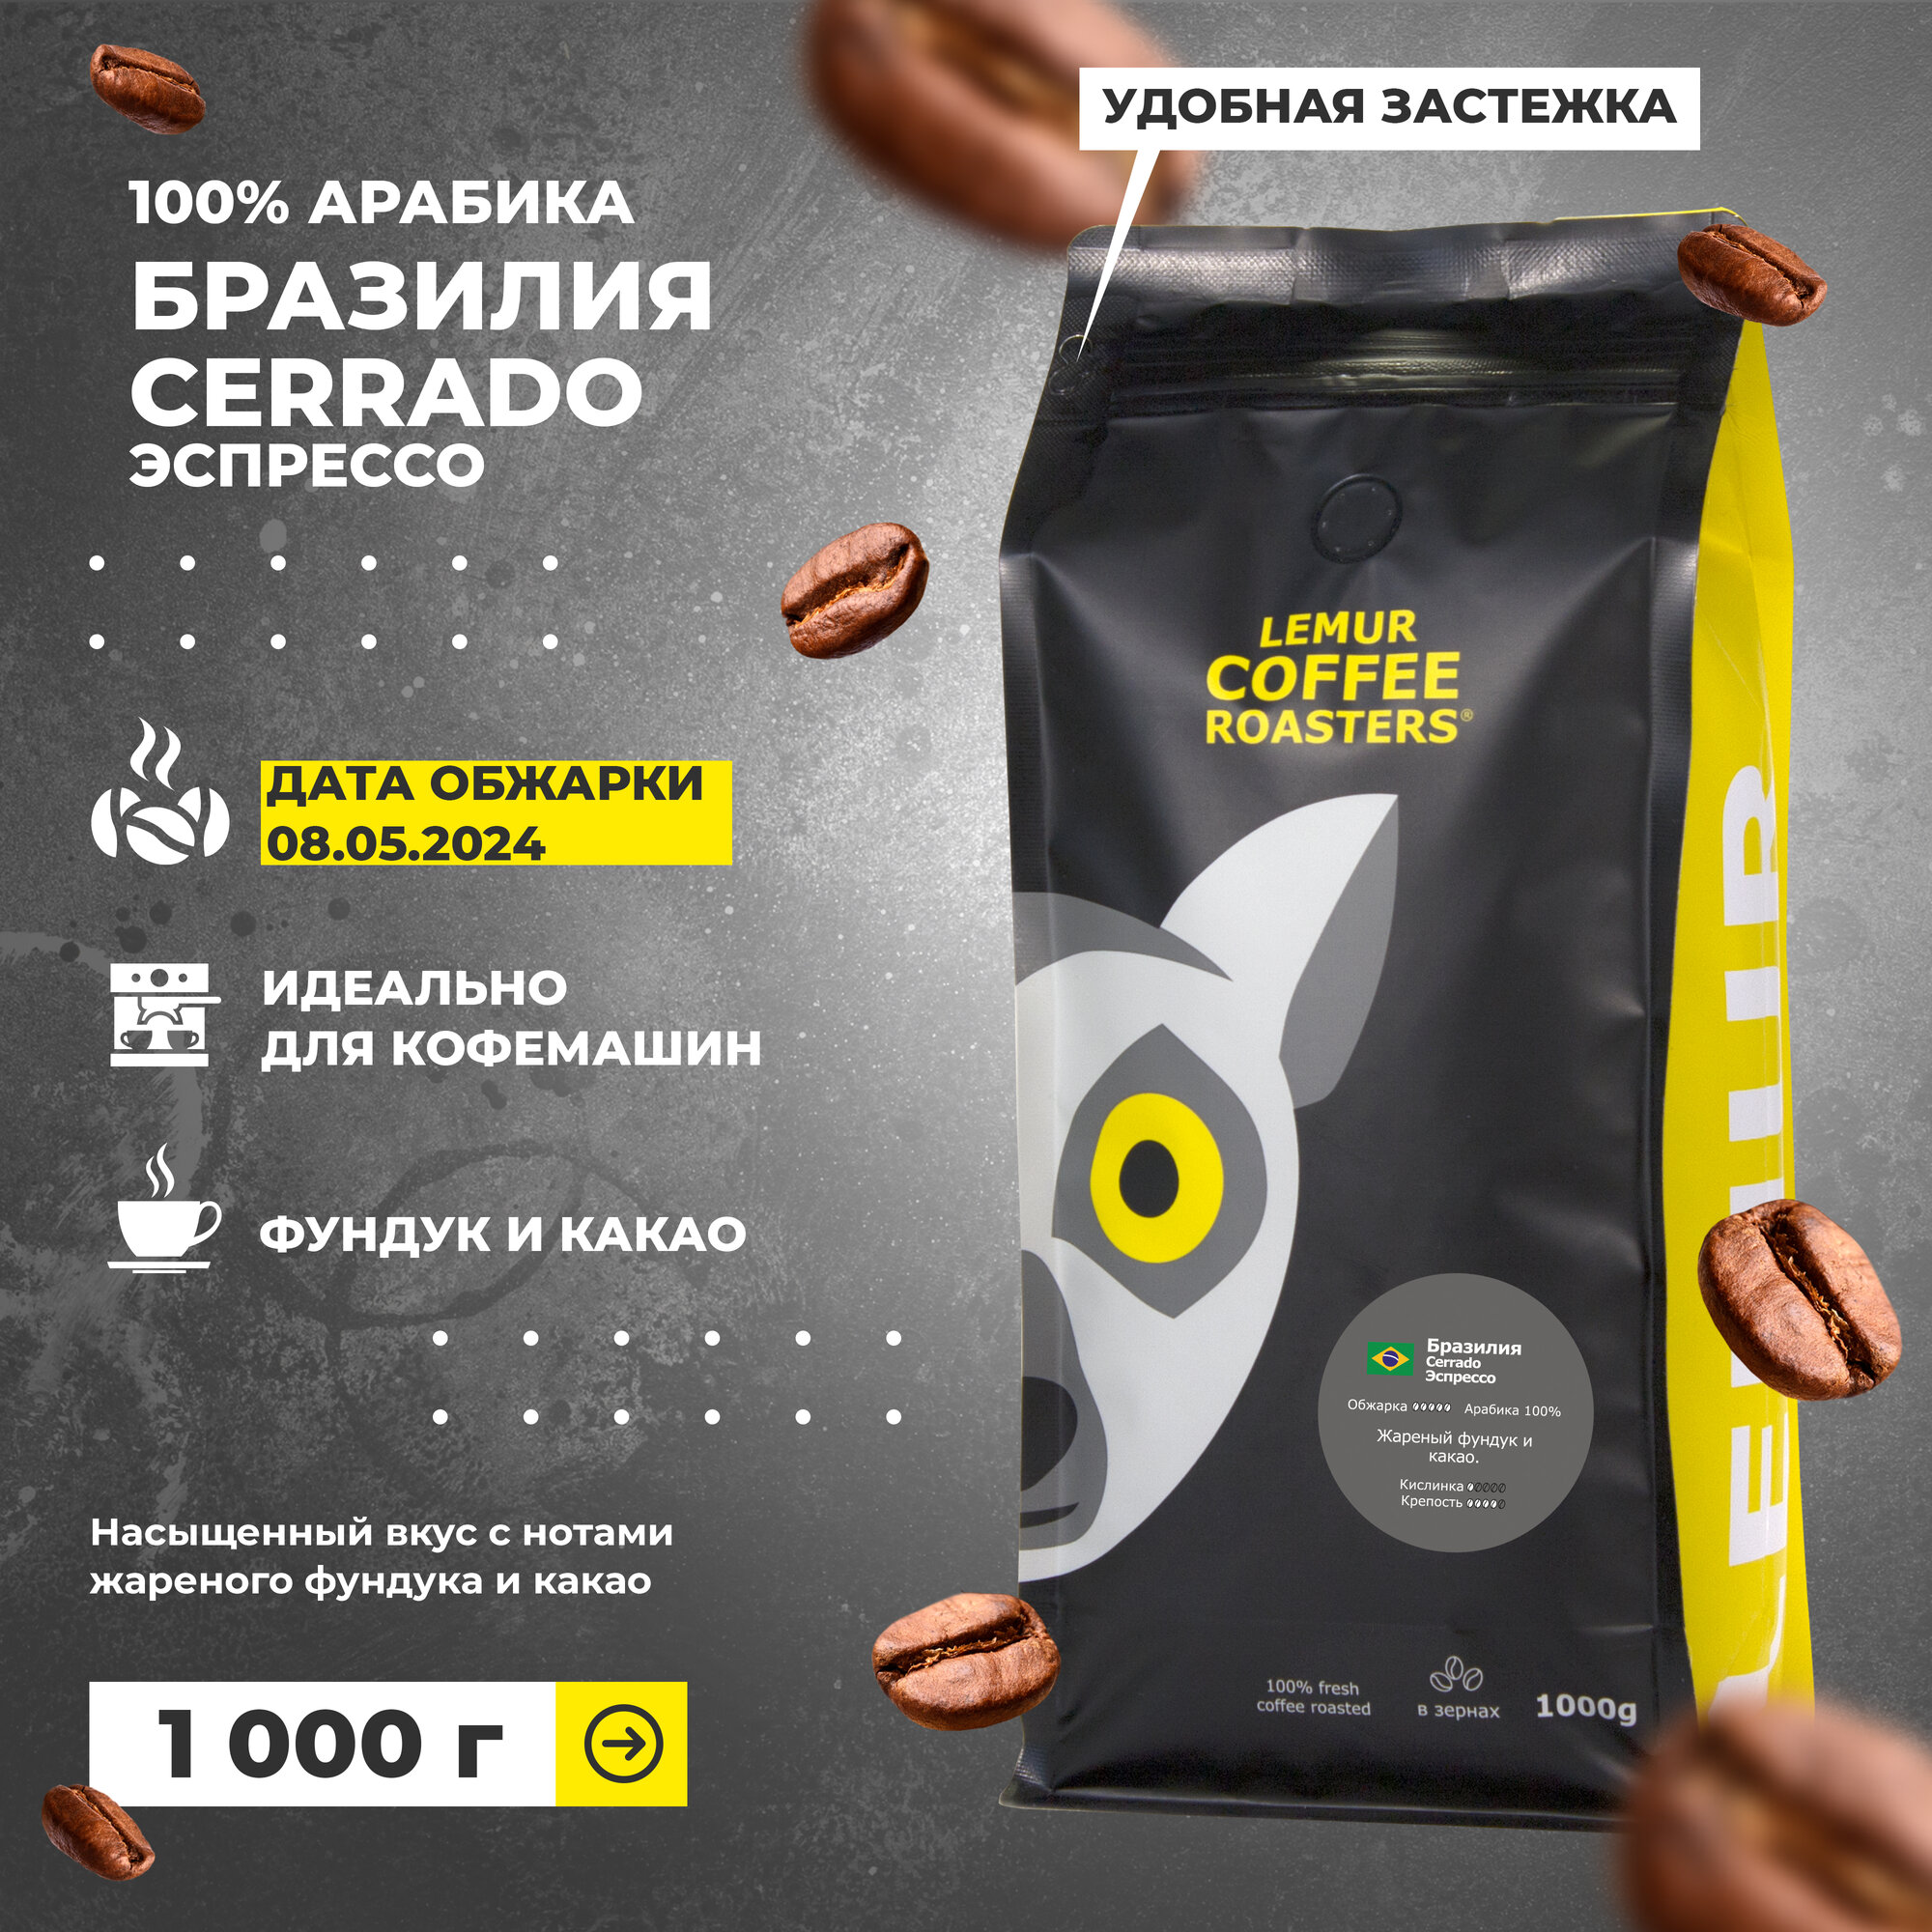 Кофе в зернах 1 кг Бразилия Серрадо Эспрессо / Cerrado Lemur Coffee Roasters, дата обжарки 08.05.2024